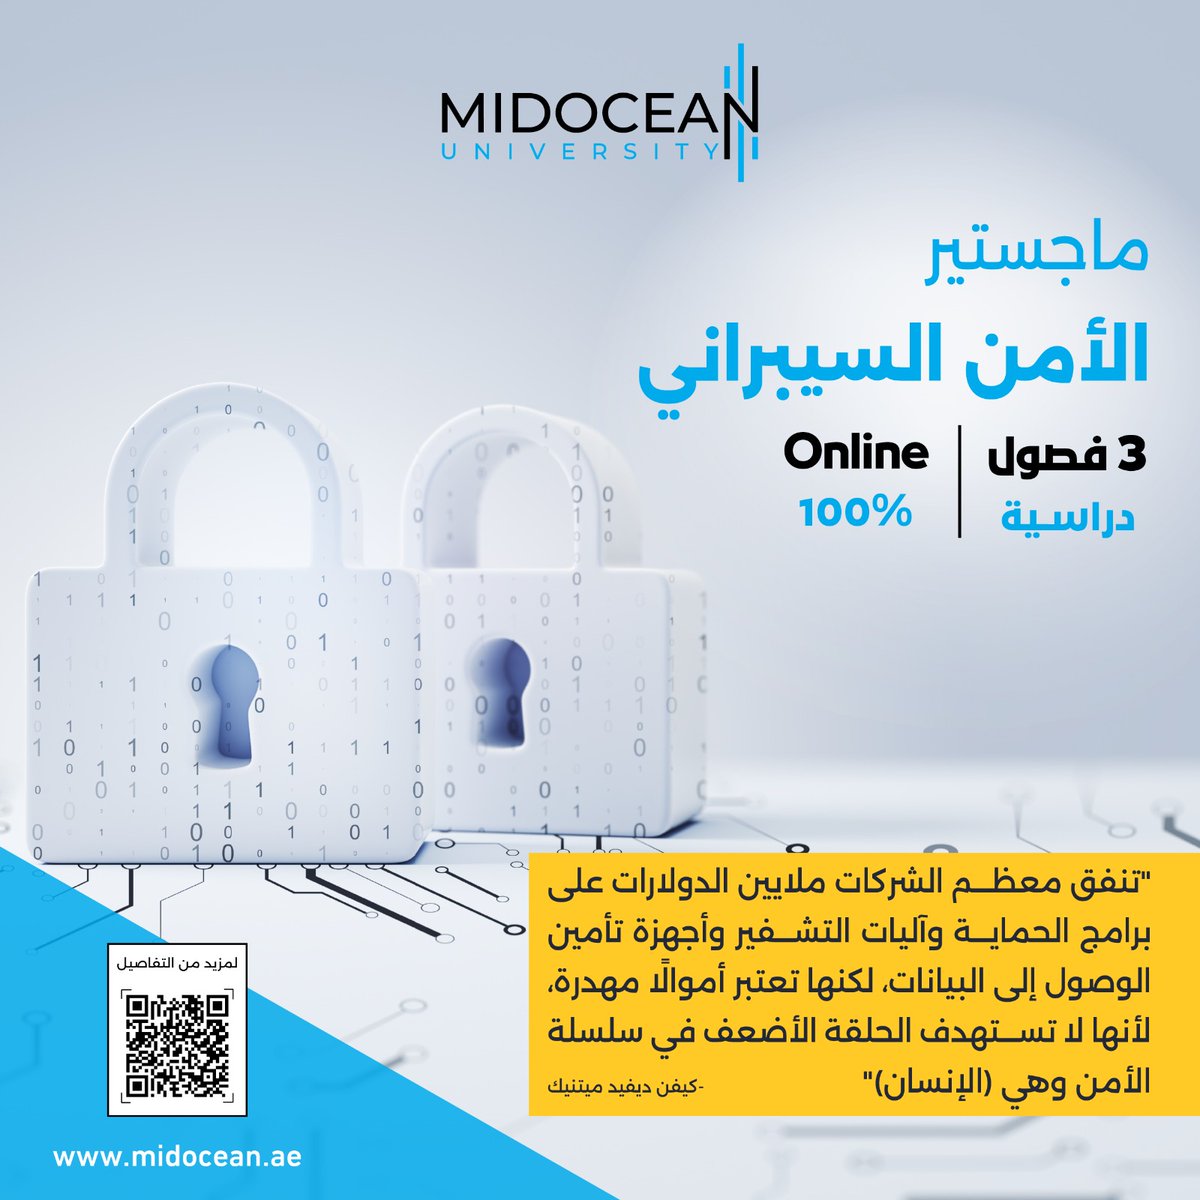 لمزيد من التفاصيل عن برنامج ماجستير الأمن السيبراني من خلال الرابط التالي: 
midocean.ae/master-of-scie…
#جامعة_ميدأوشن 
#Midoceanuniversity